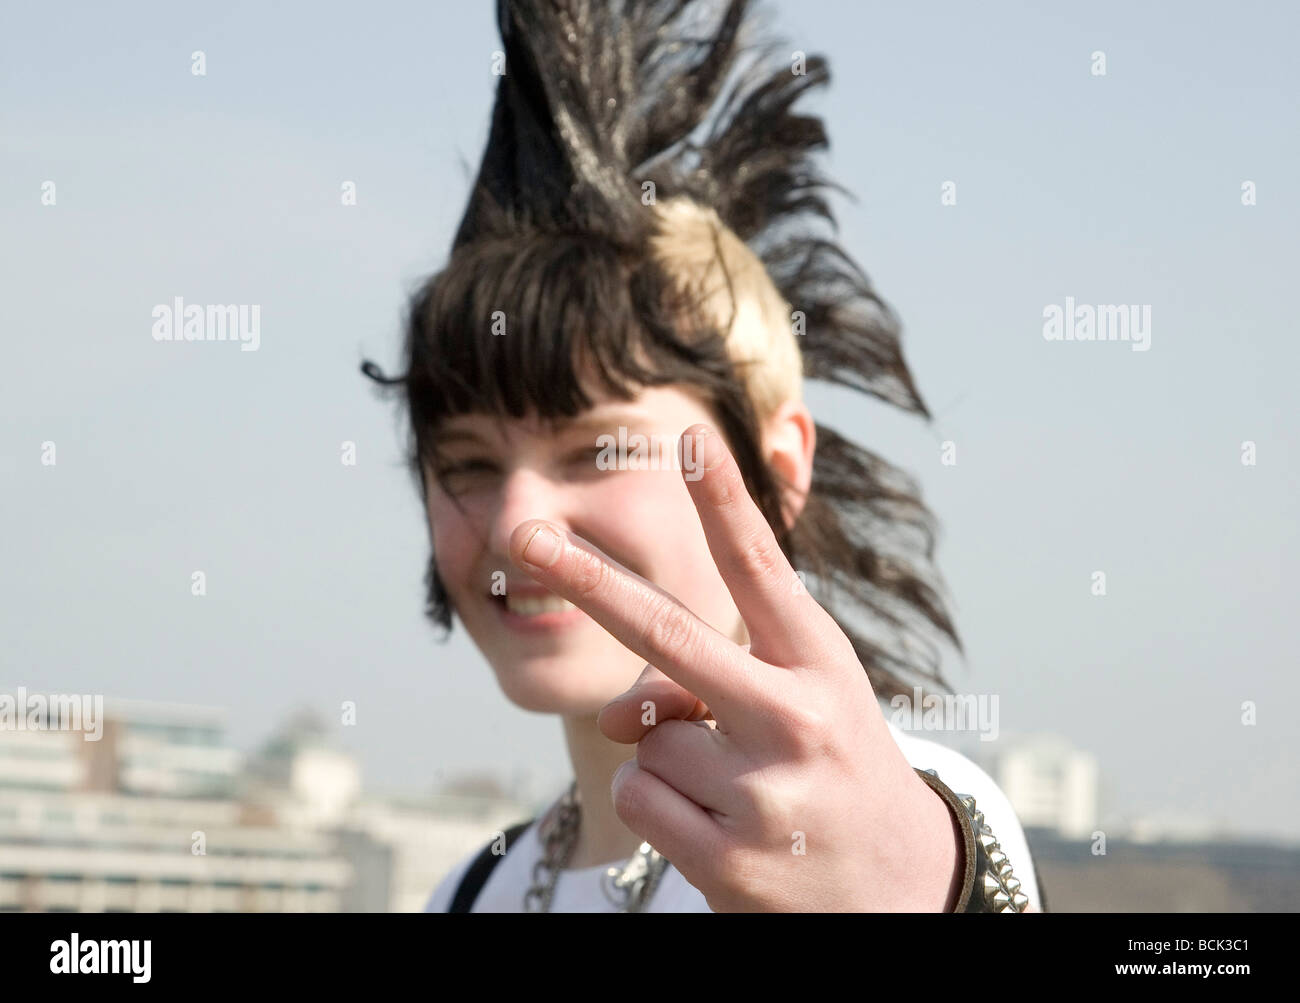 Ein Punk-Mädchen "Rae Ray Unruhen" mit einem großen Mohikaner, London Bridge, London, UK 15.3.2009 Stockfoto